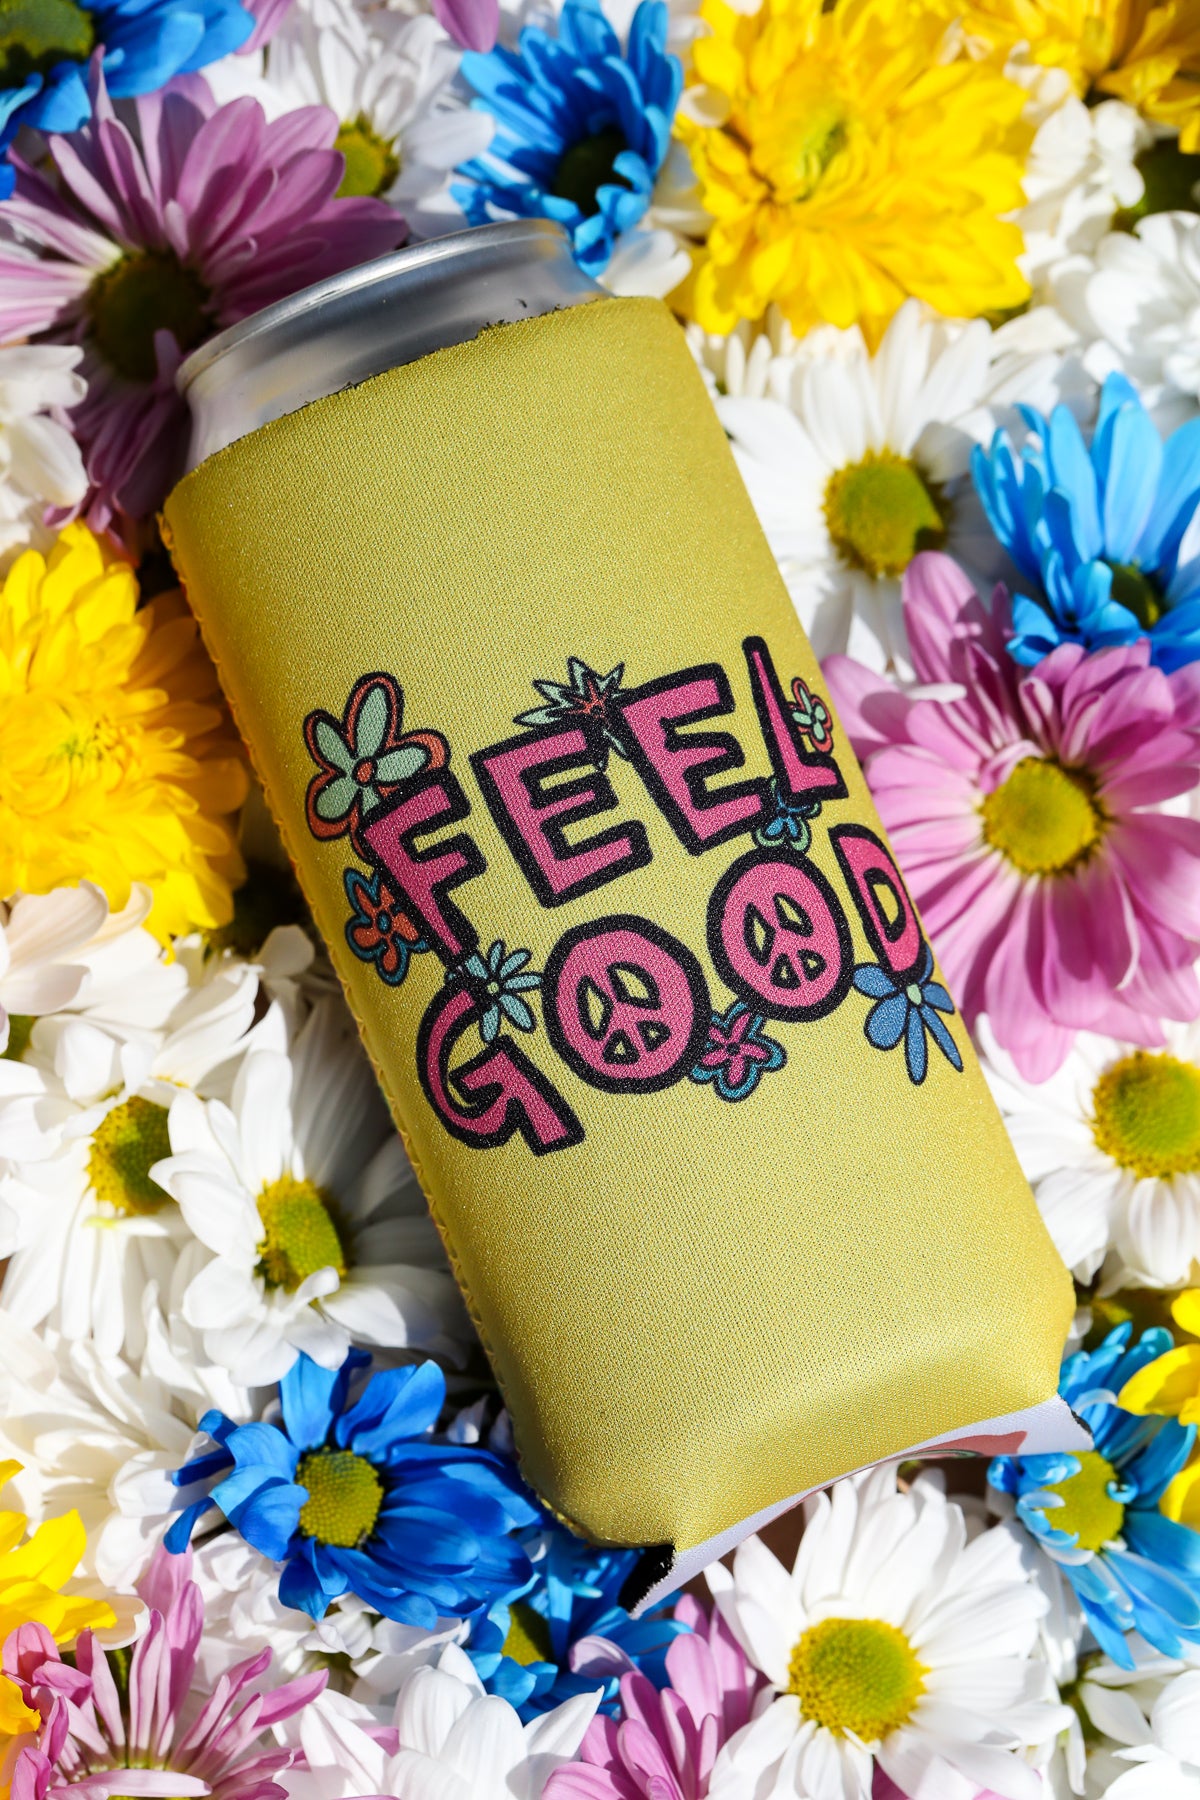 Feel Good Daisy Coasters - 4 Pack w/Free Koozie